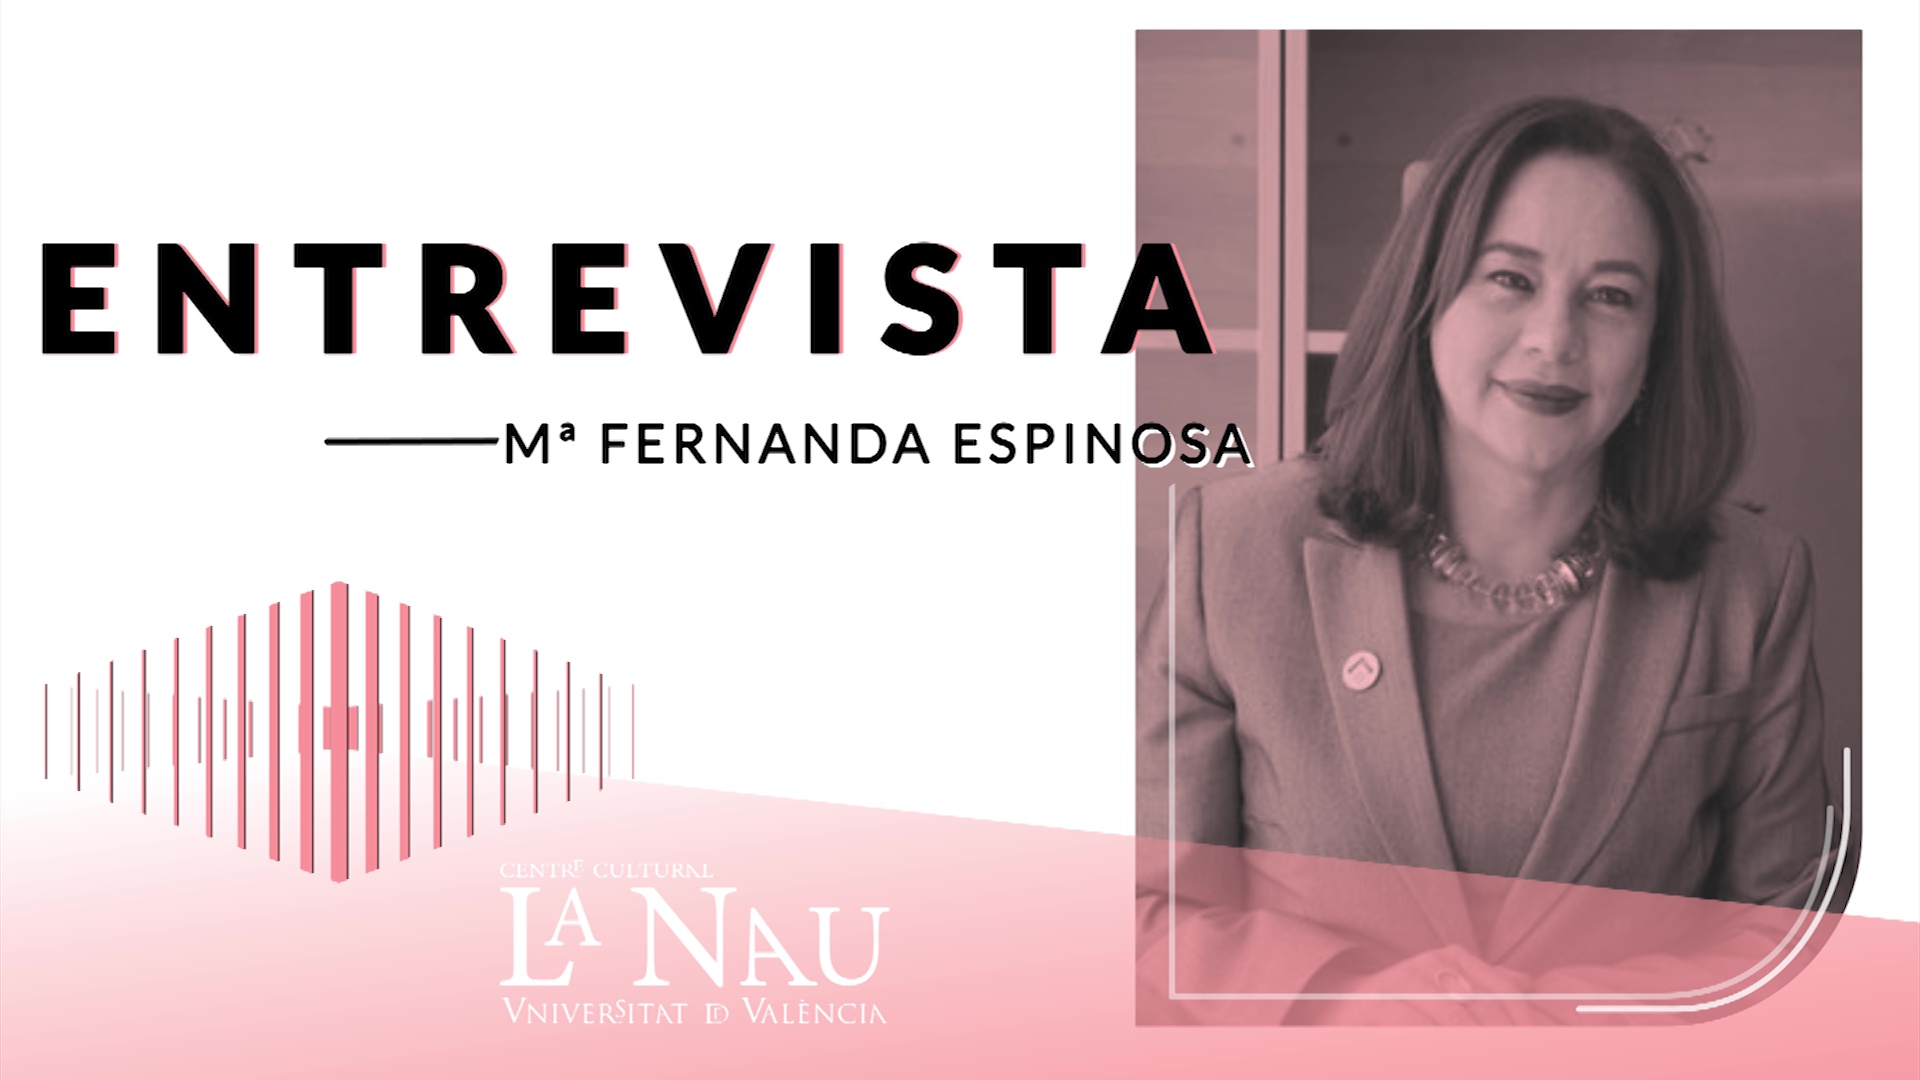 Entrevista a La Nau. Maria Fernanda Espinosa